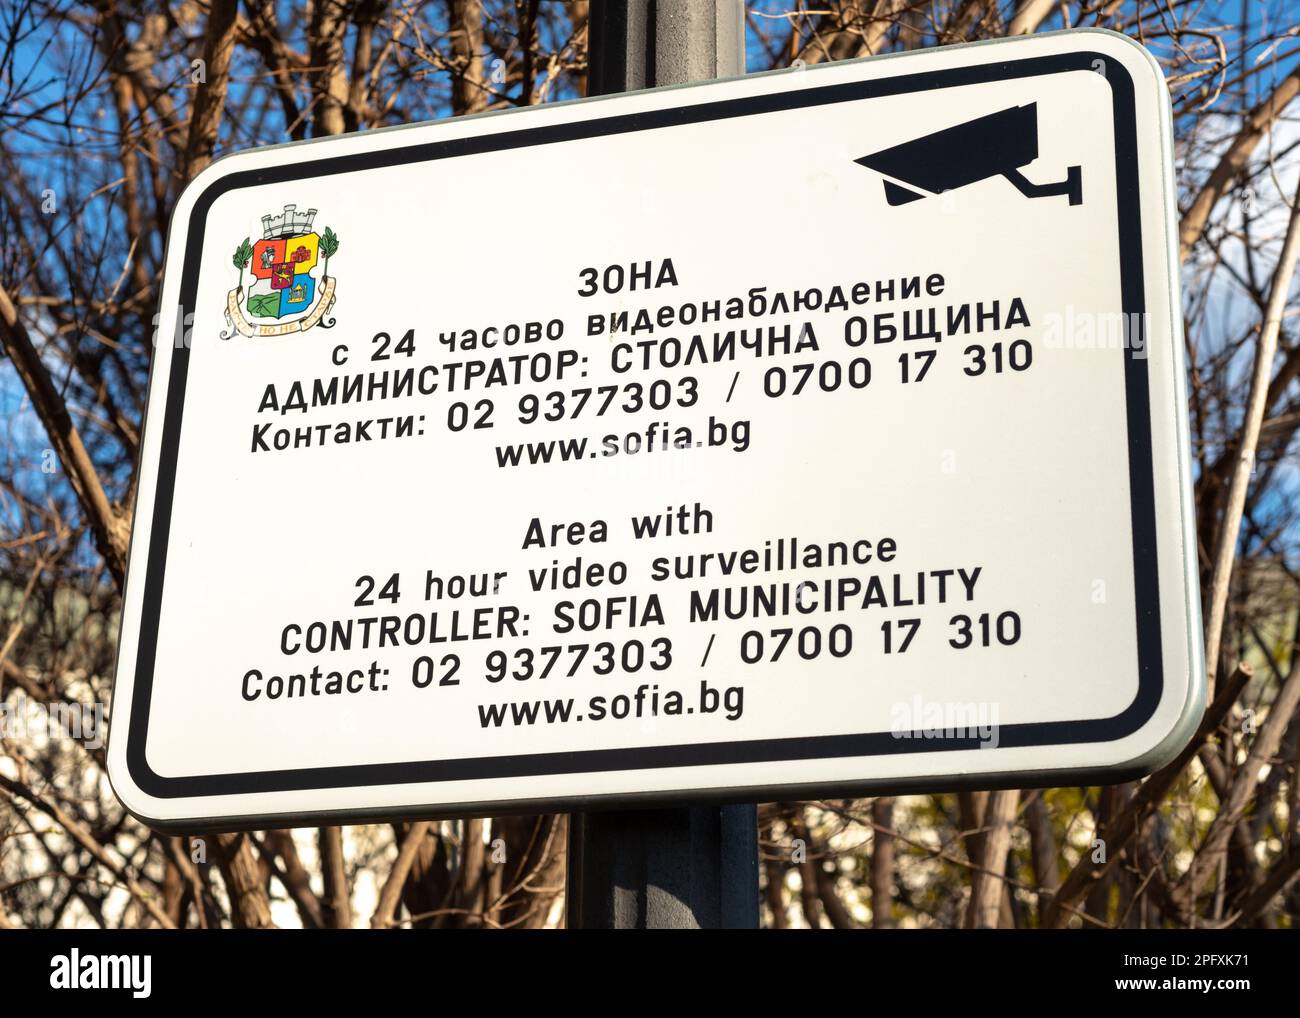 Area di videosorveglianza 24 ore insegna bilingue del comune di Sofia per la sicurezza pubblica nel centro di Sofia, Bulgaria, Europa orientale, Balcani, UE Foto Stock